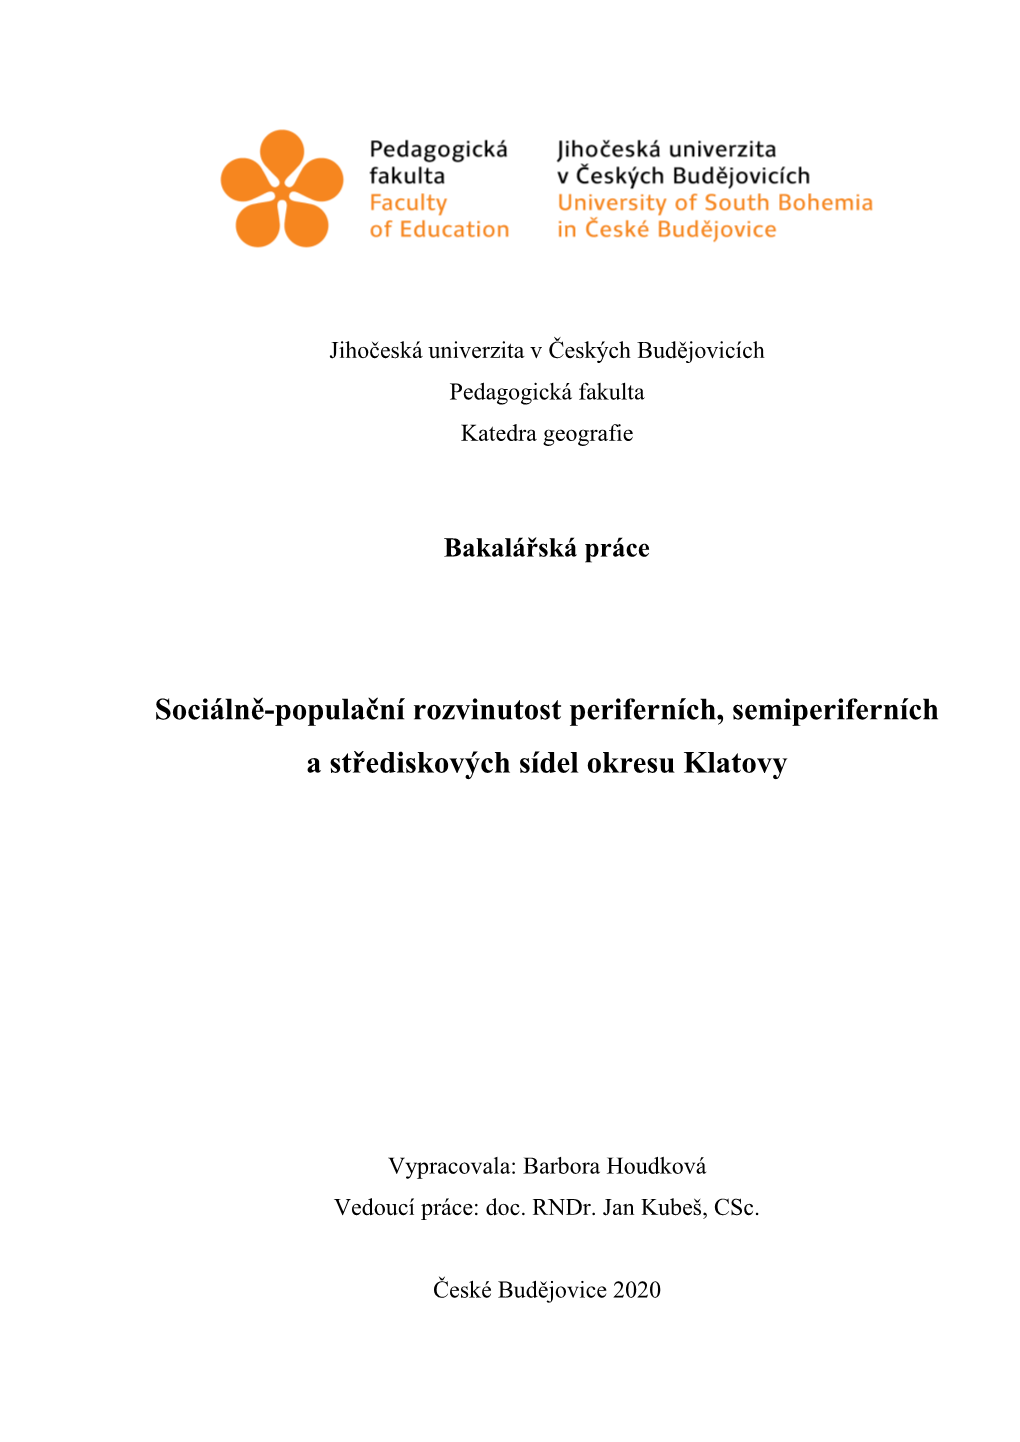 Sociálně-Populační Rozvinutost Periferních, Semiperiferních a Střediskových Sídel Okresu Klatovy